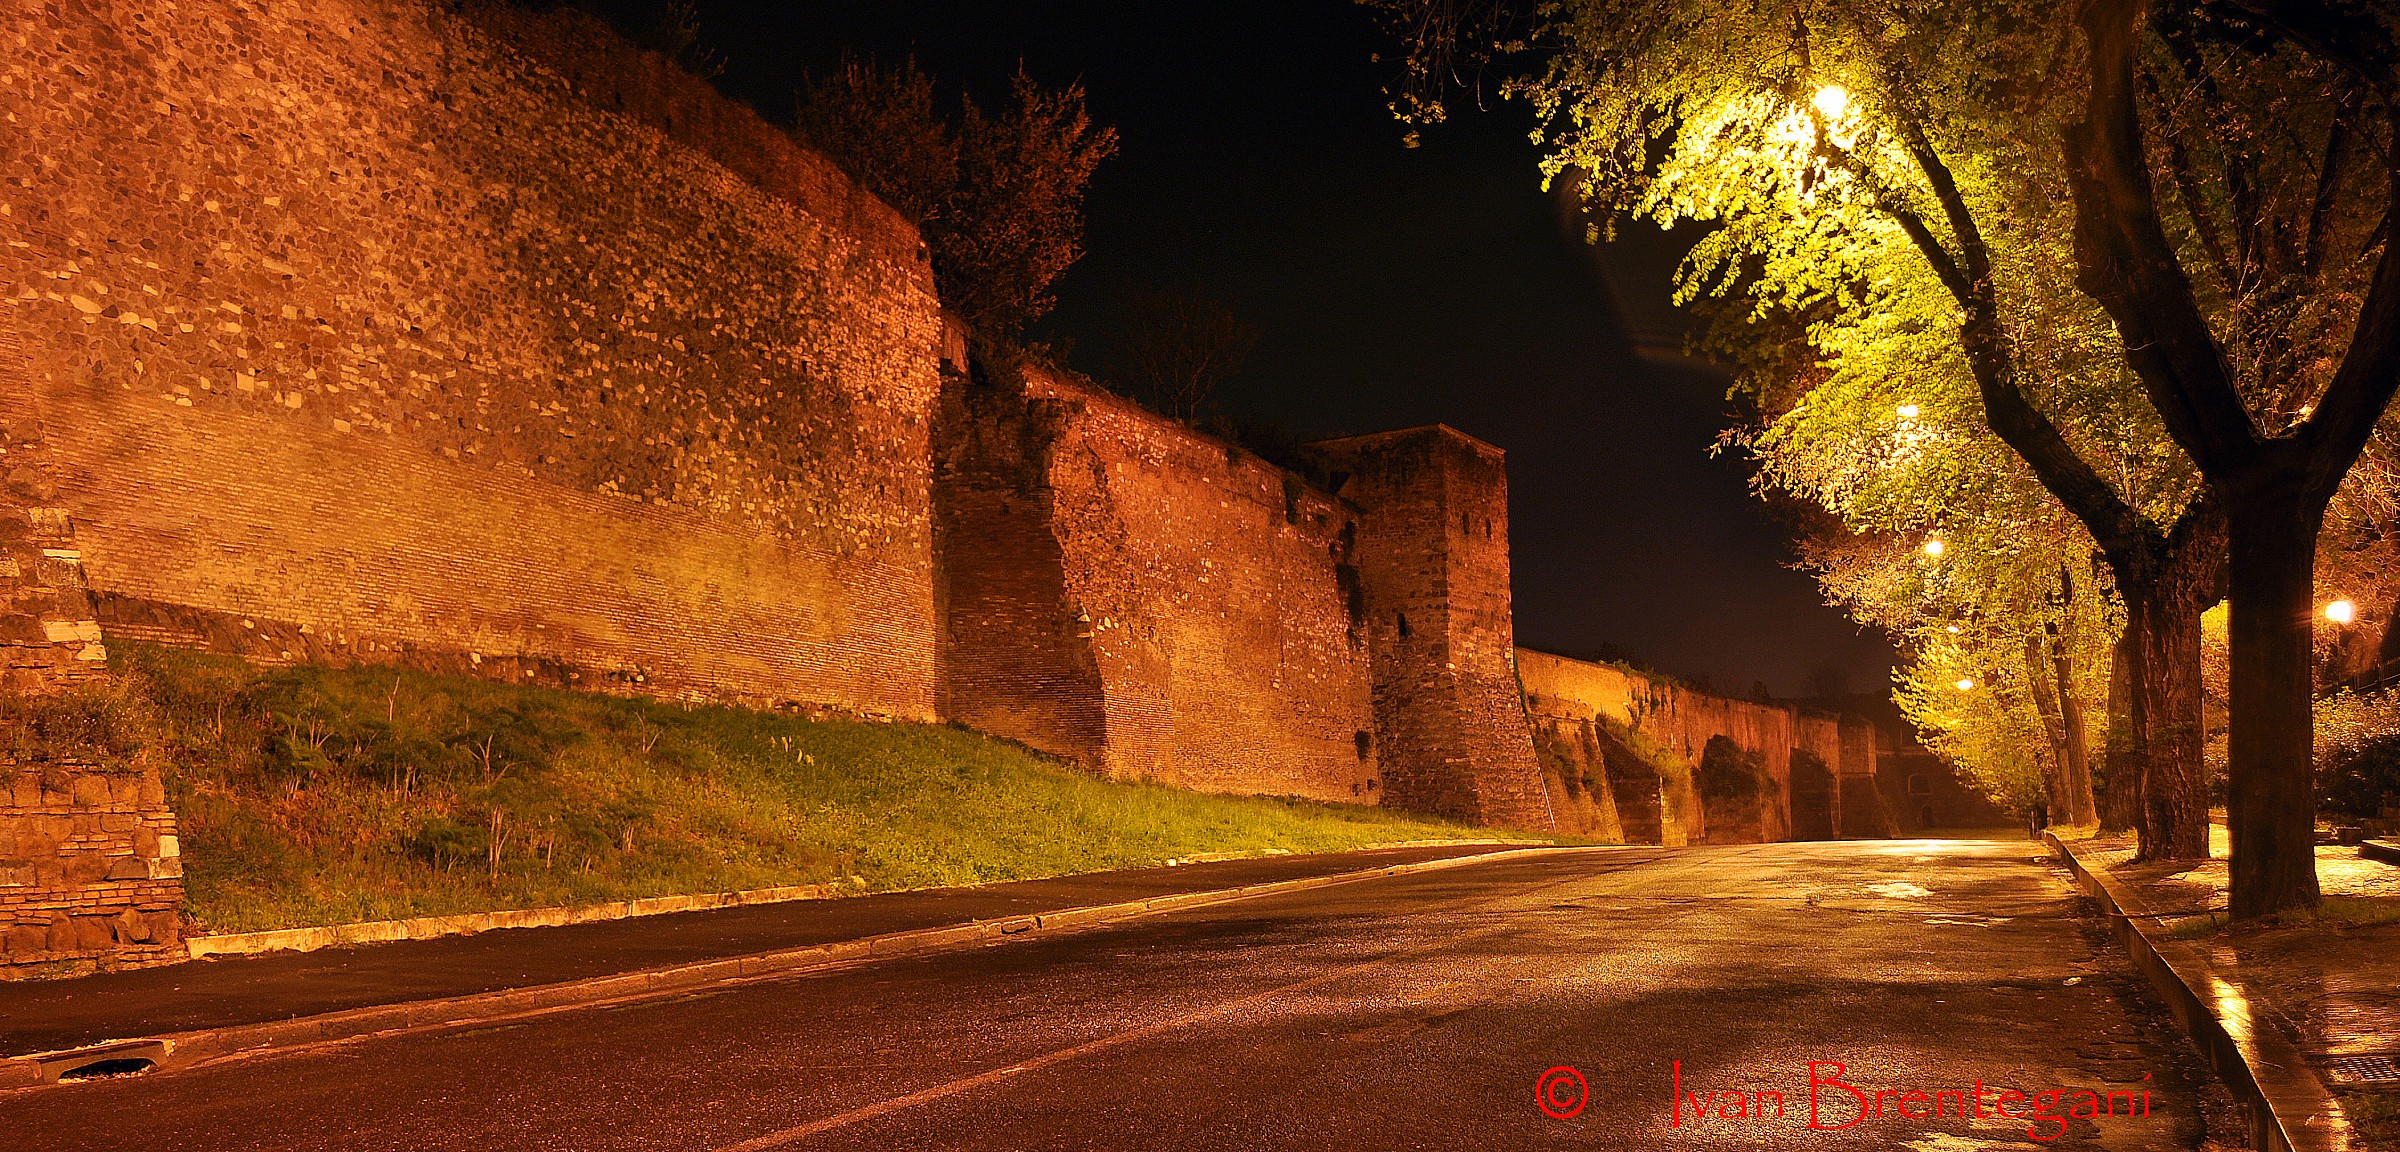 Le vecchie mura romane vicino a Porta Ardeatina...